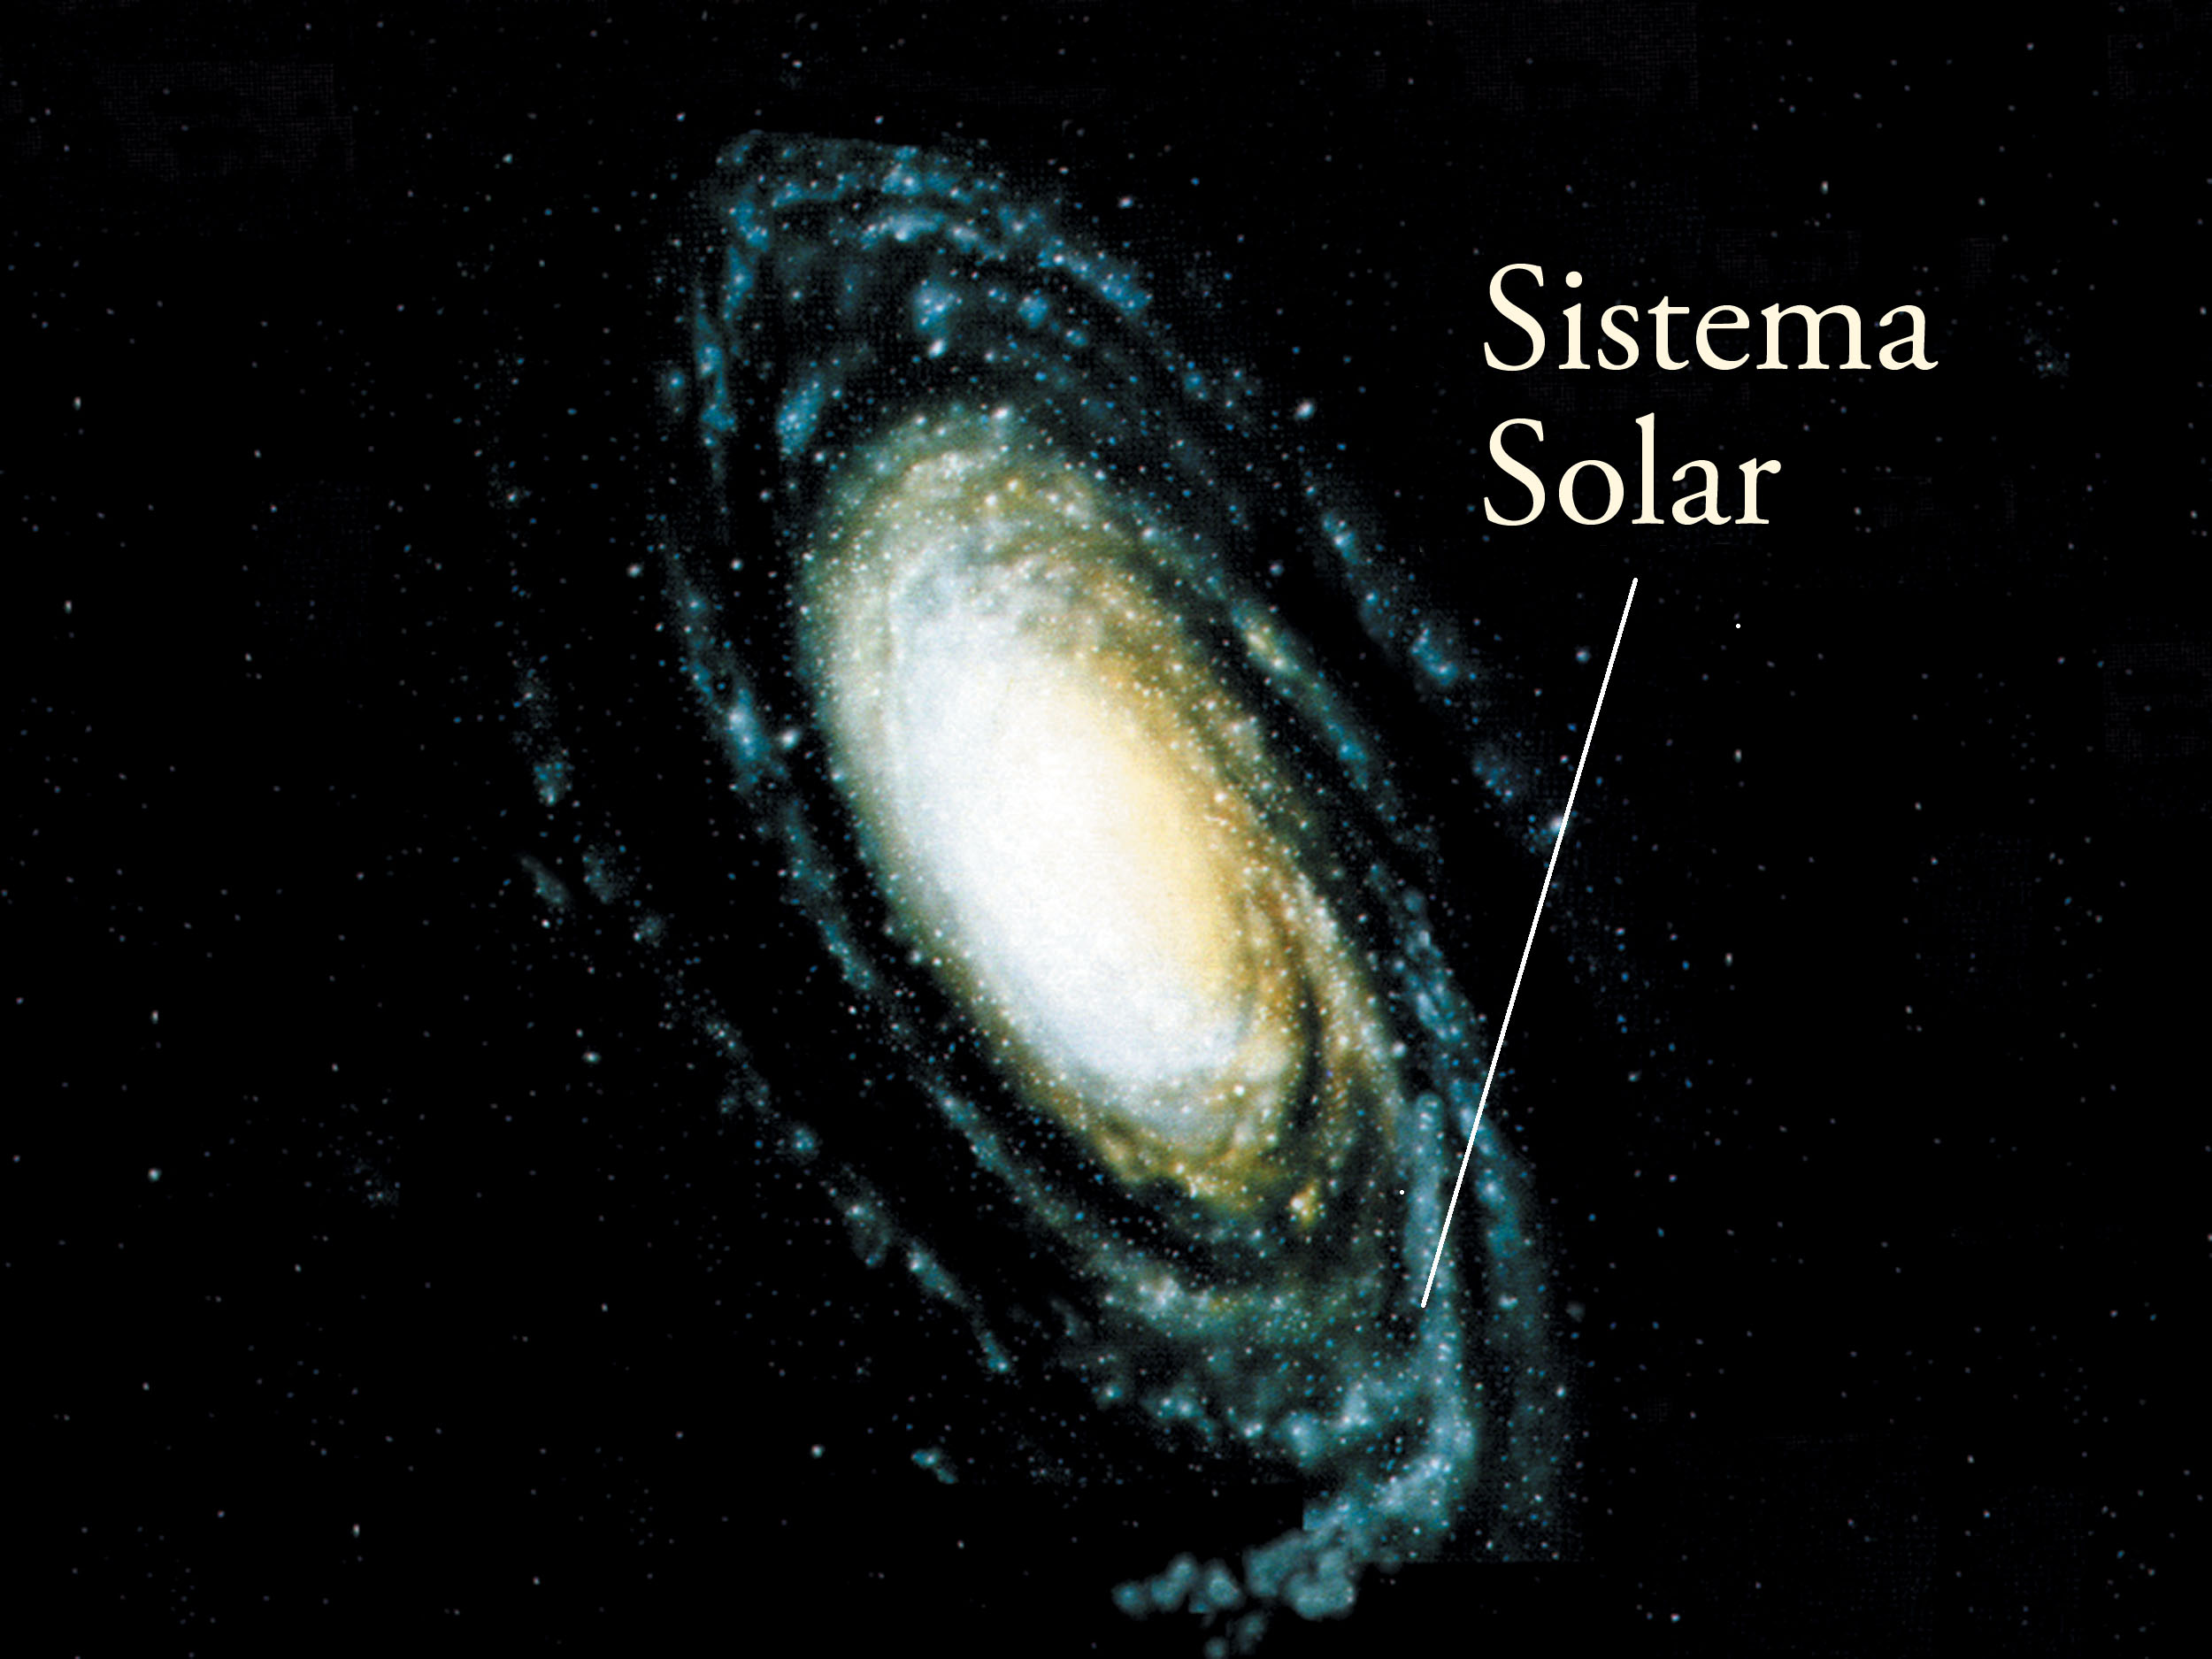 En que galaxia se encuentra el sistema solar